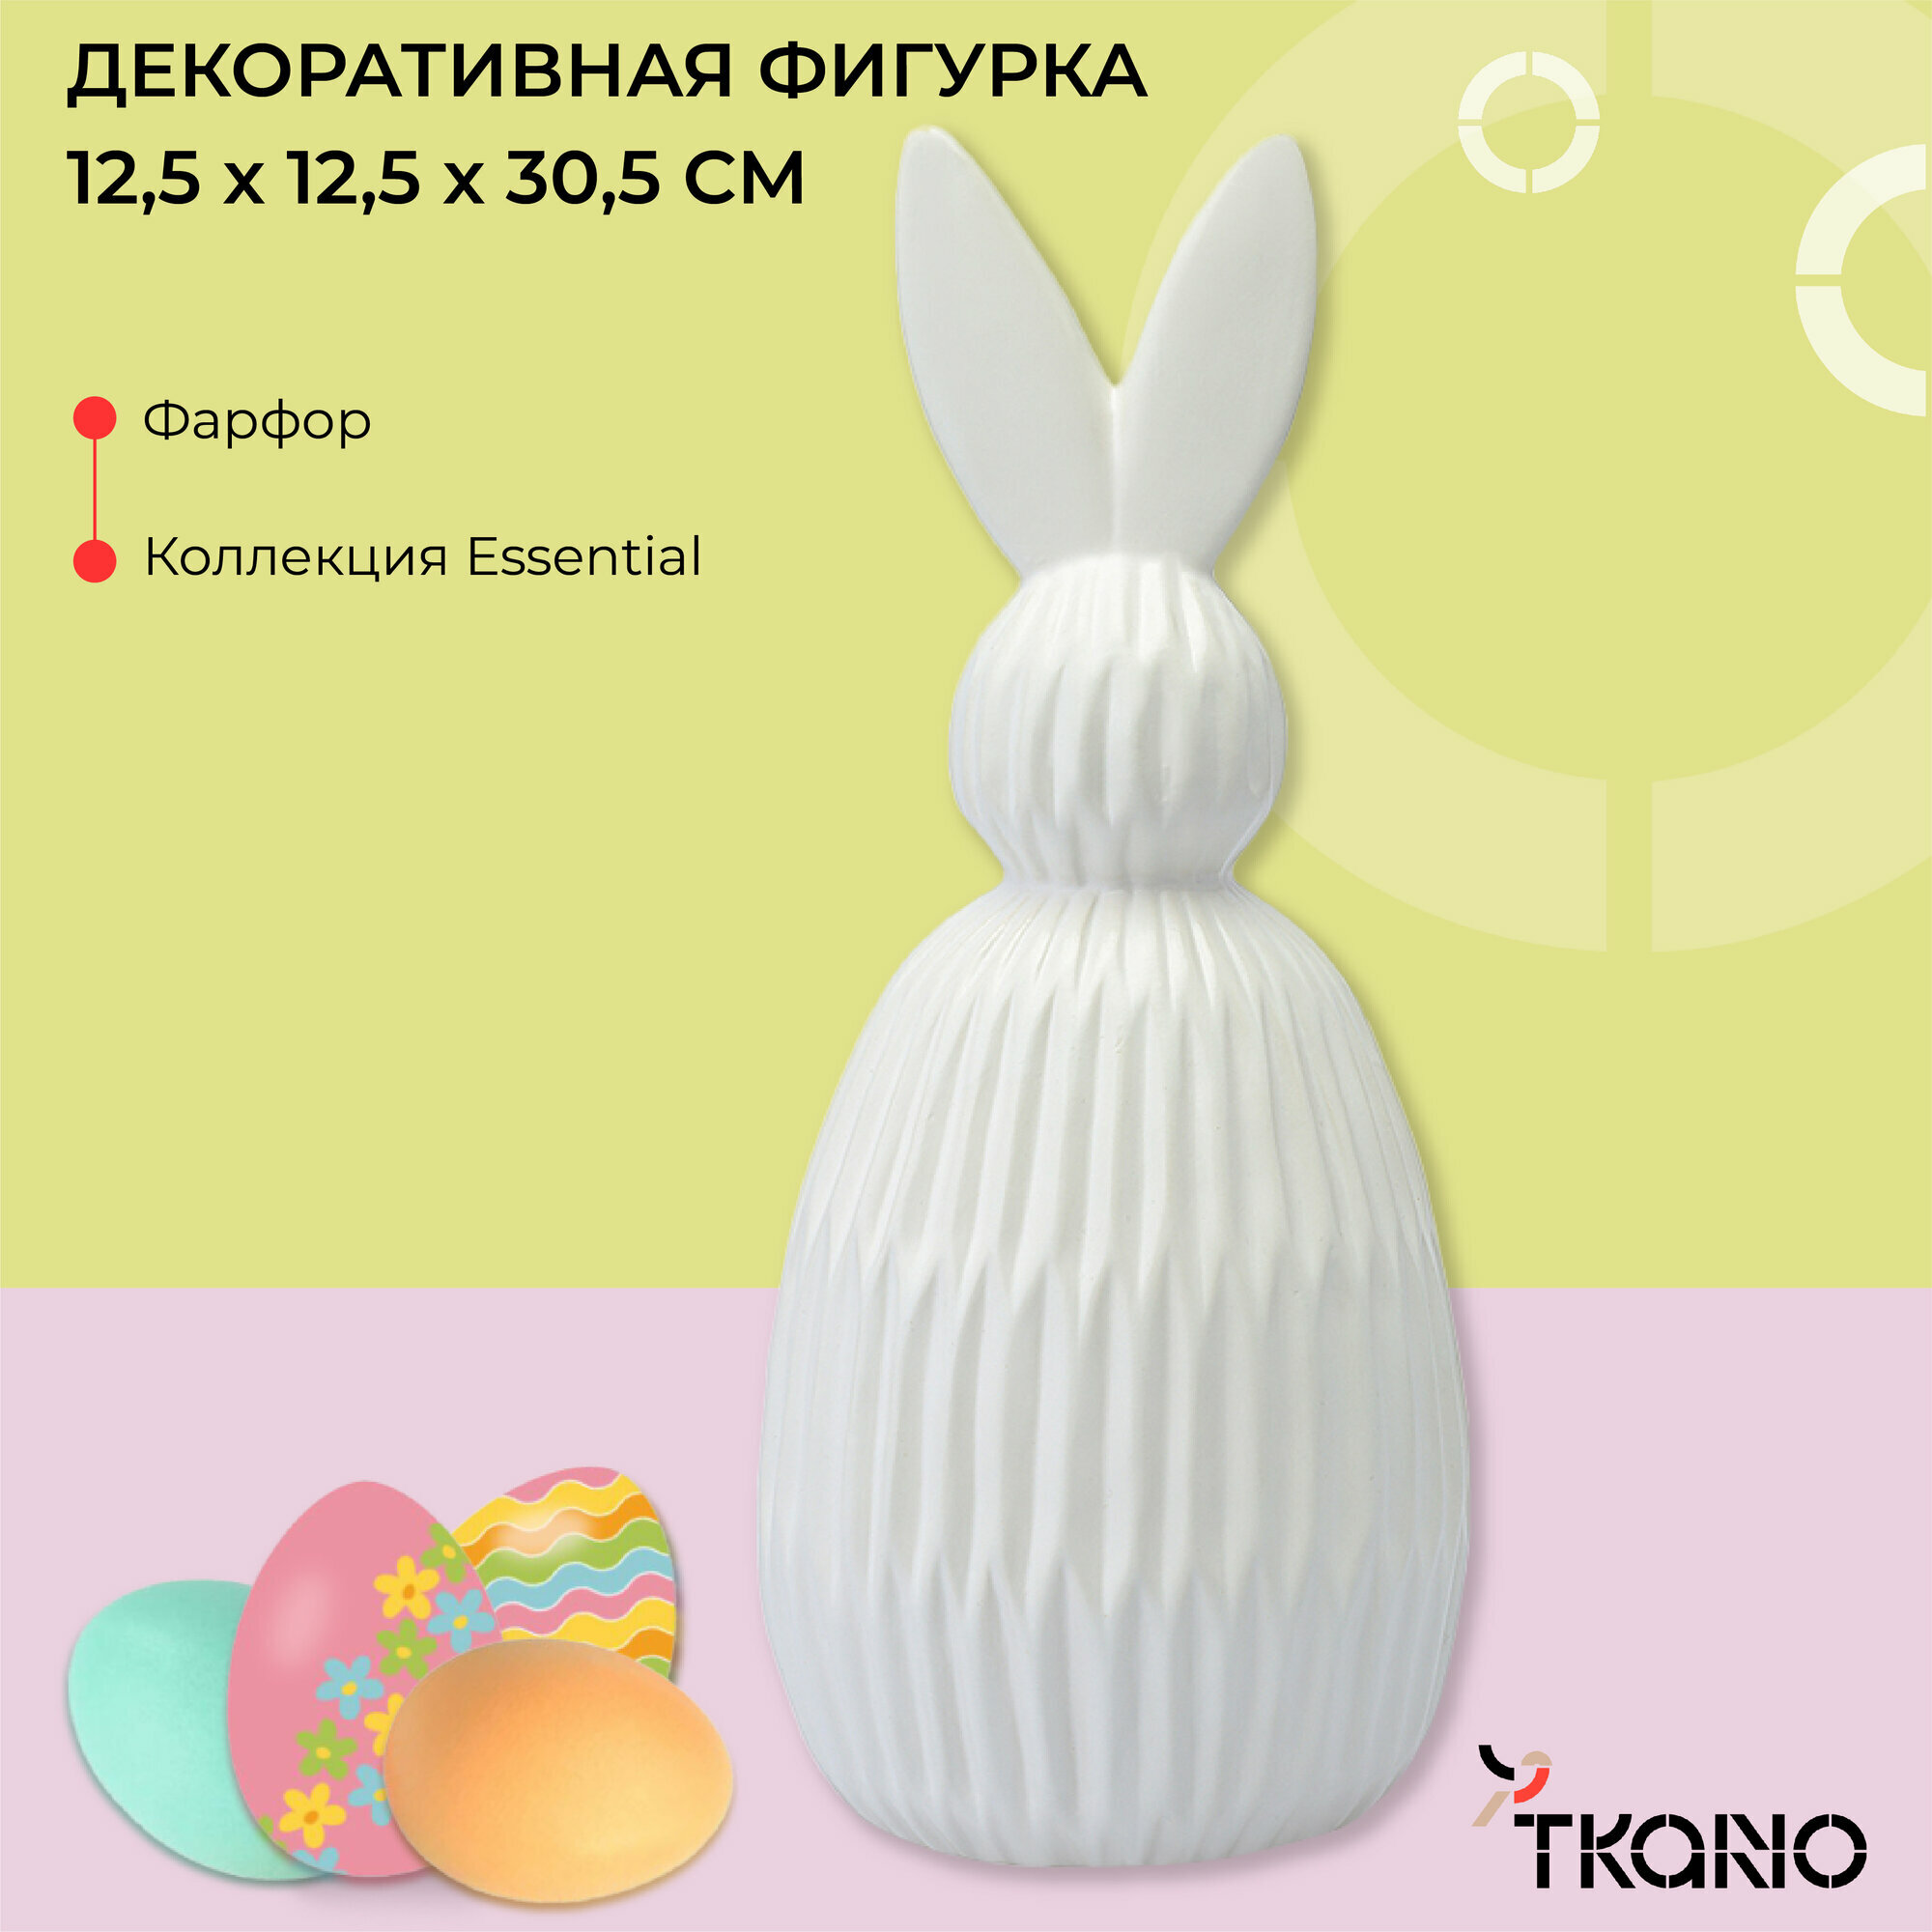 Декор заяц из фарфора Trendy Bunny пасхальный белый кролик Essential 9,2х9,2x22,6 см Tkano